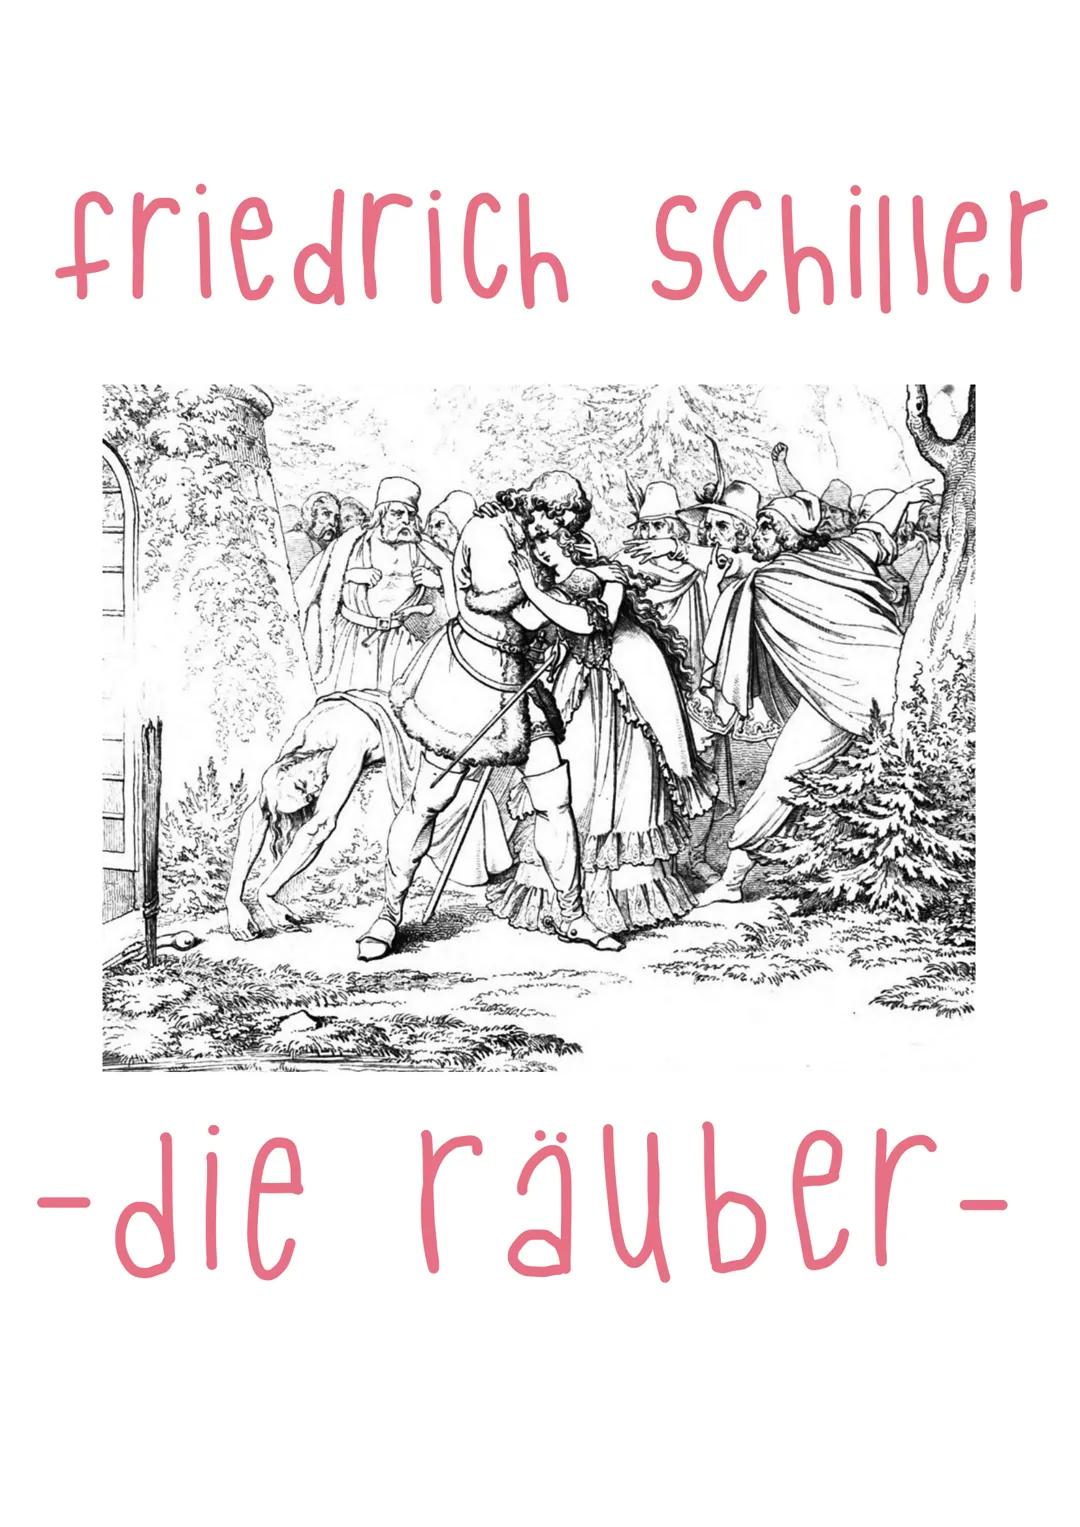 friedrich Schiller
-die räuber-
- DATEN ZUM WERK.
Titel: Die Räuber
Gattung: (tragisches Drama) Schauspiel
Originalsprache: Deutsch
-> dicht